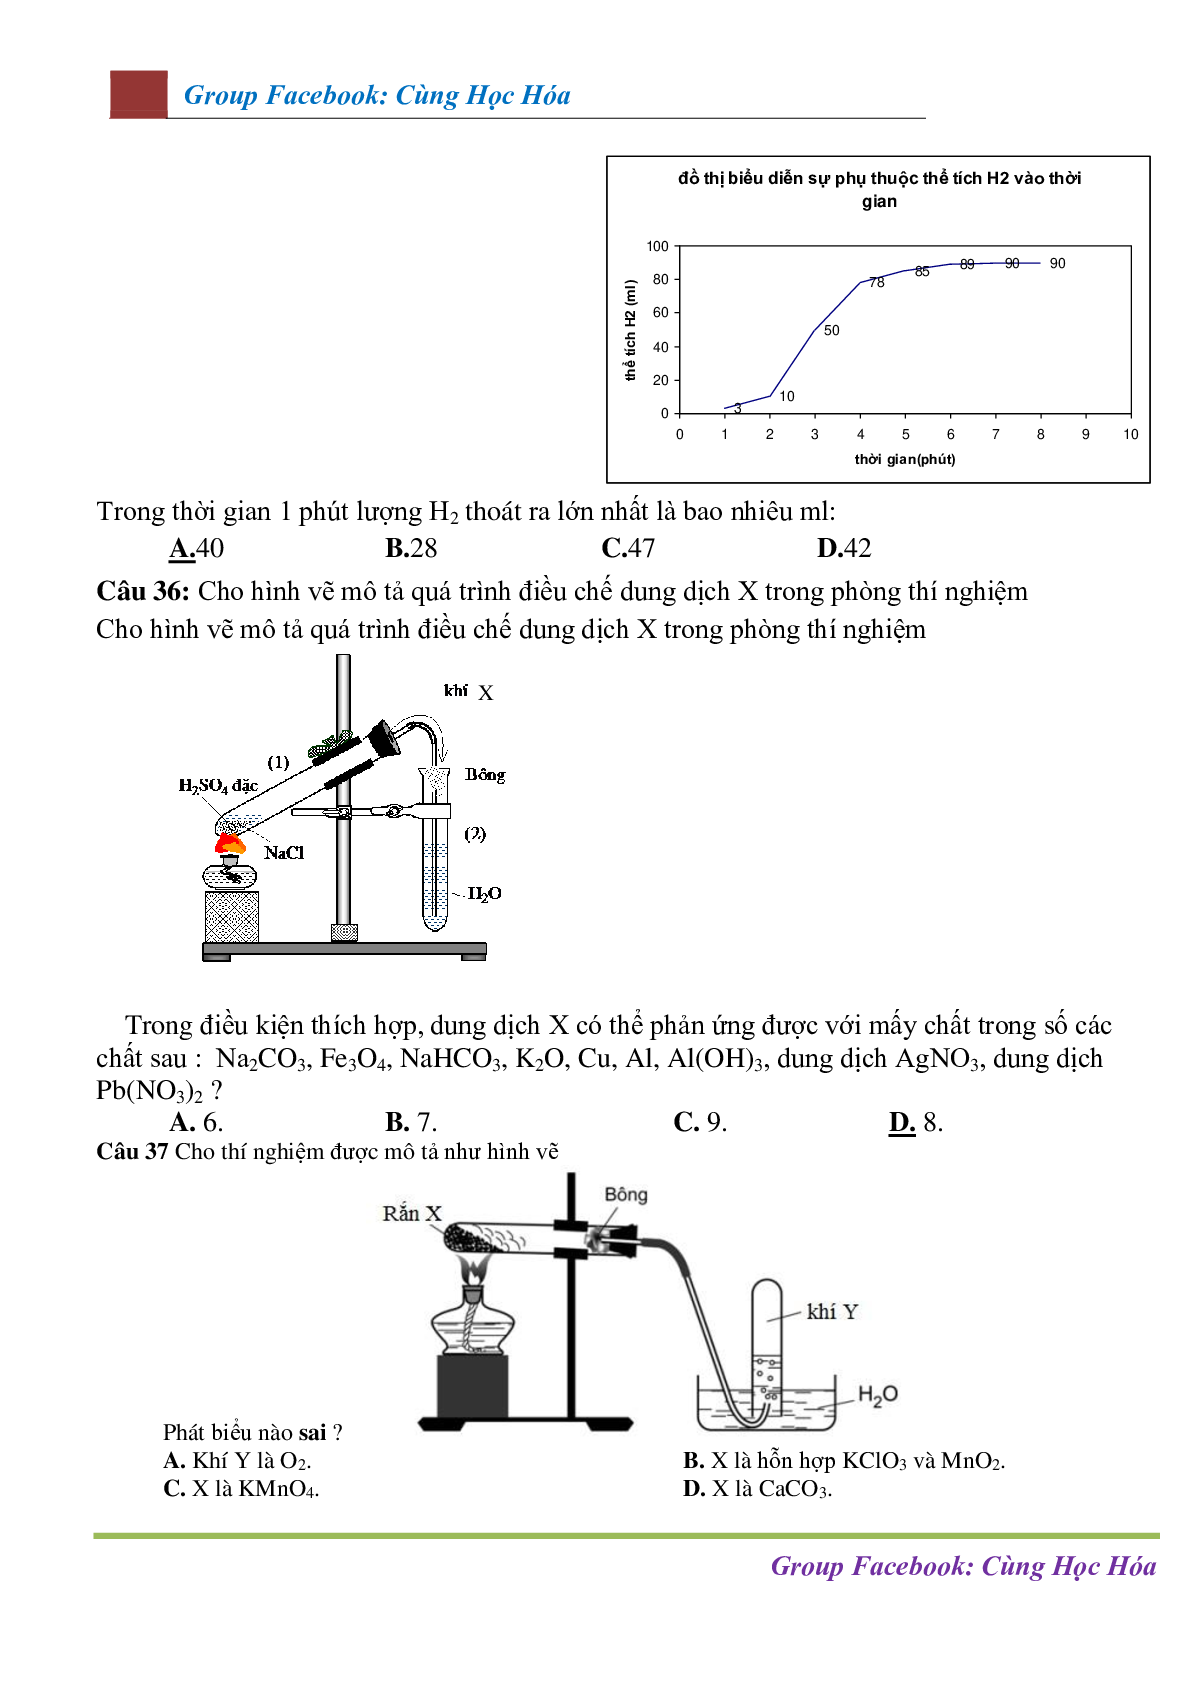 Chuyên đề Mô hình thí nghiệm - ứng dụng thực tế môn Hóa học ôn thi THPTQG (trang 10)